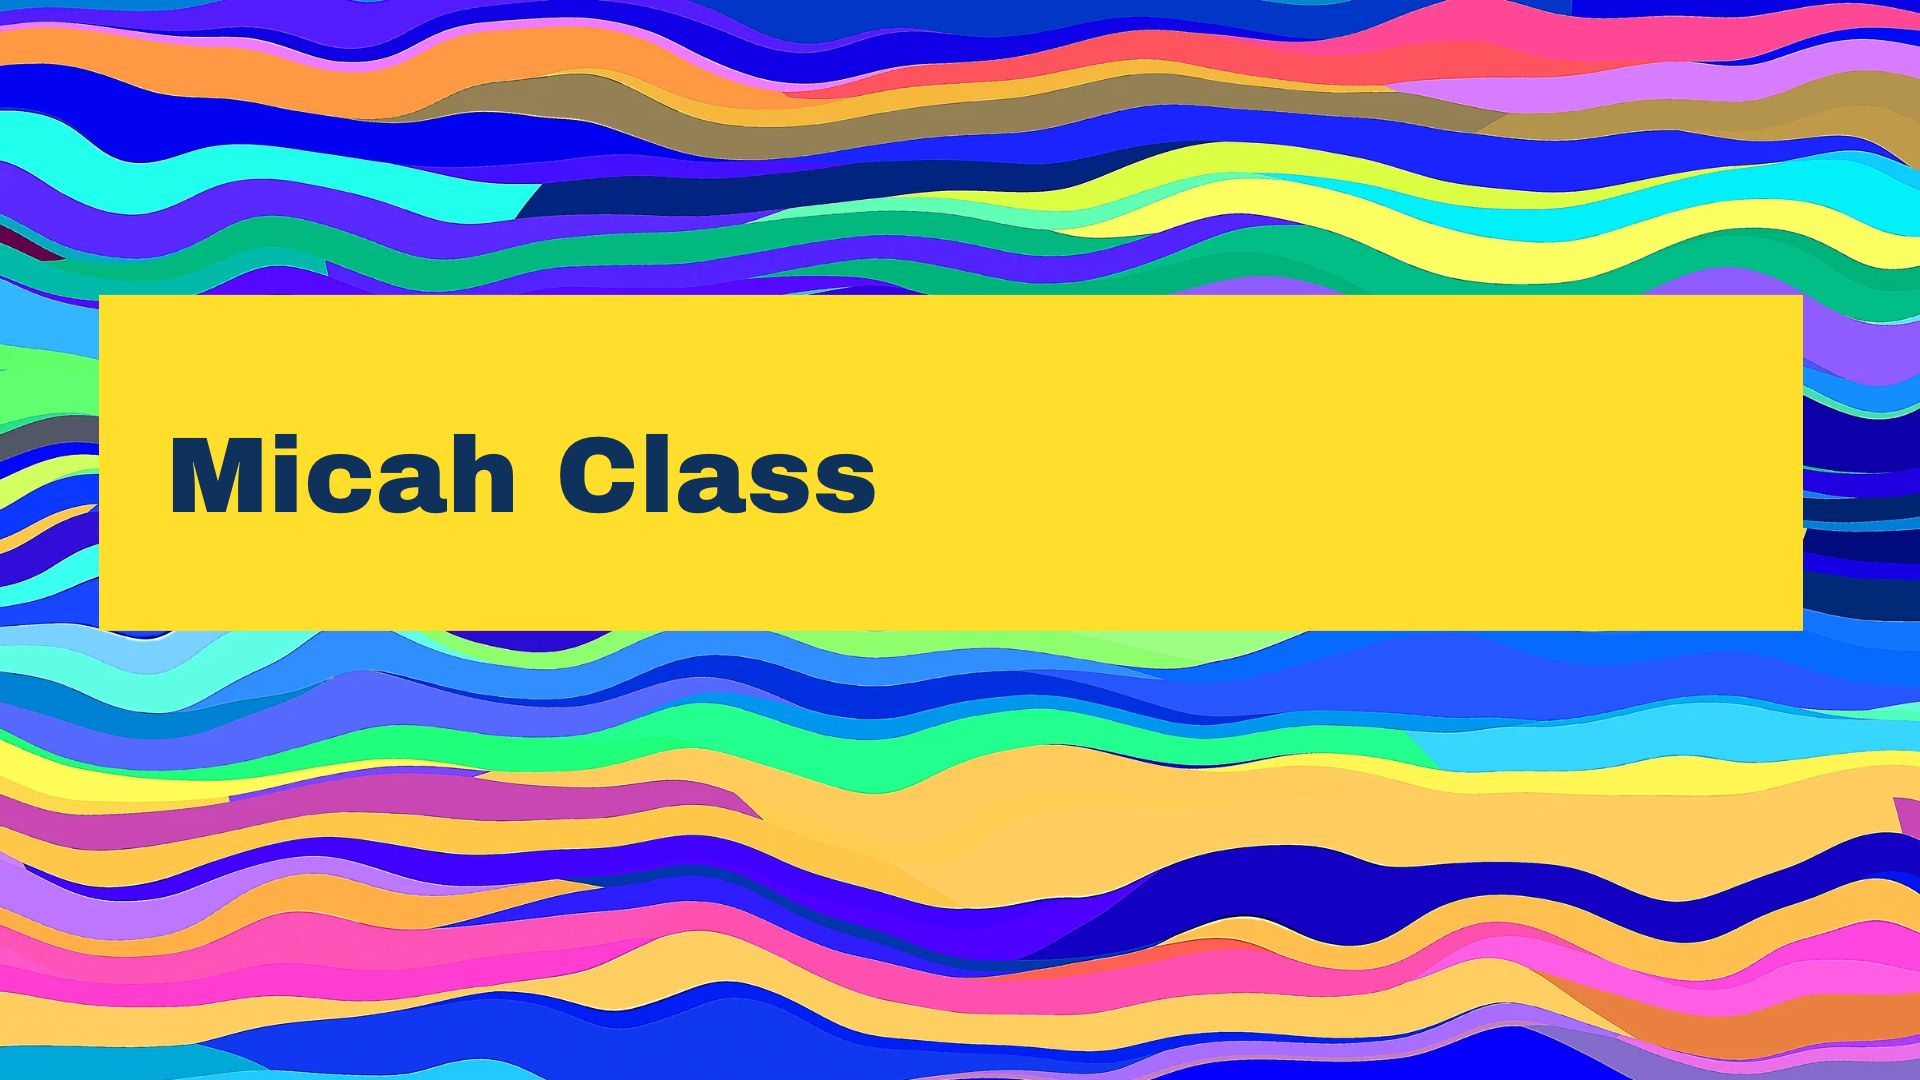 Micah Class